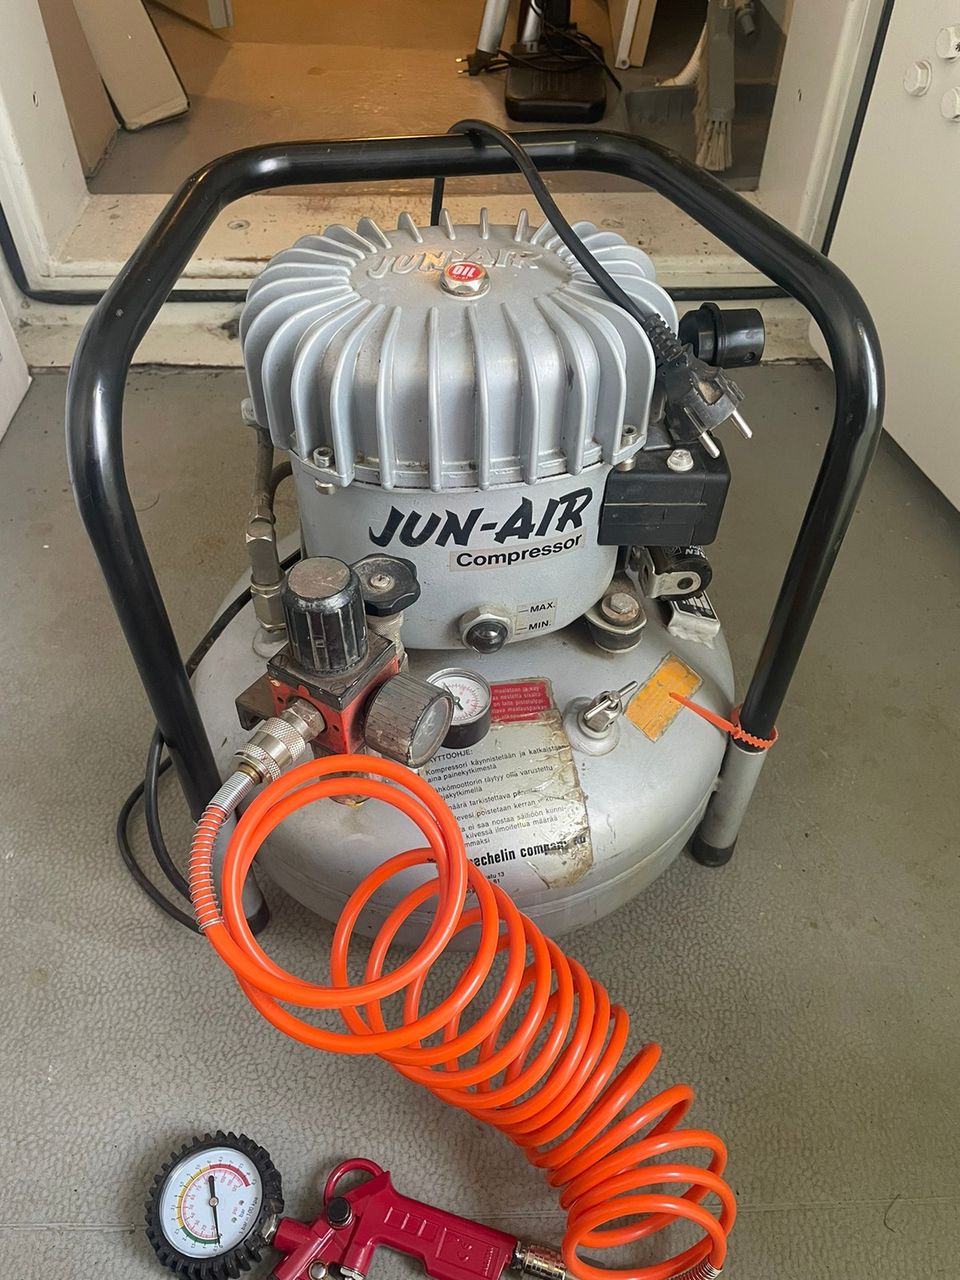 Jun-air kompressori